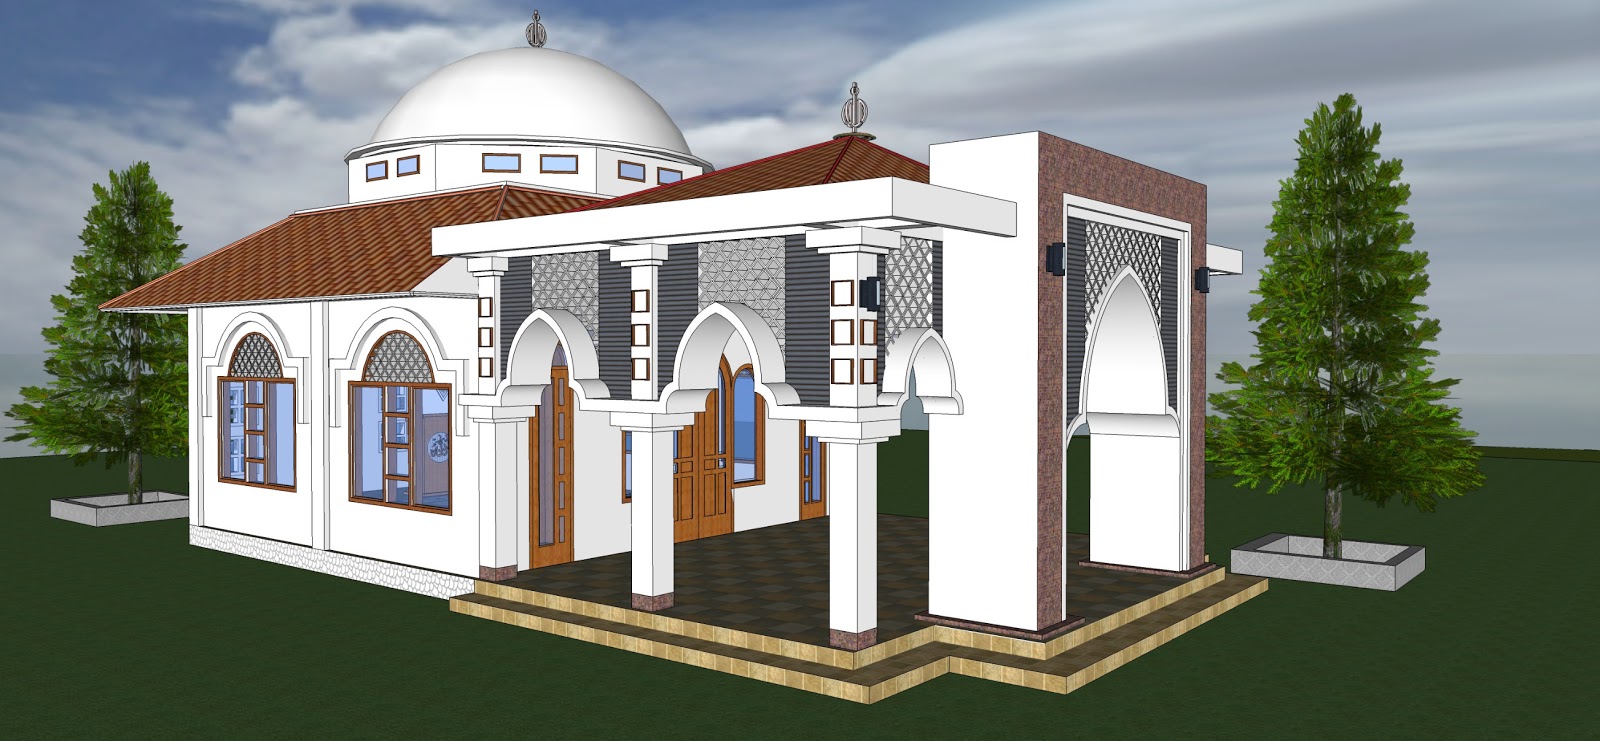  96 Gambar Sketsa  Masjid  Yang Mudah Gudangsket